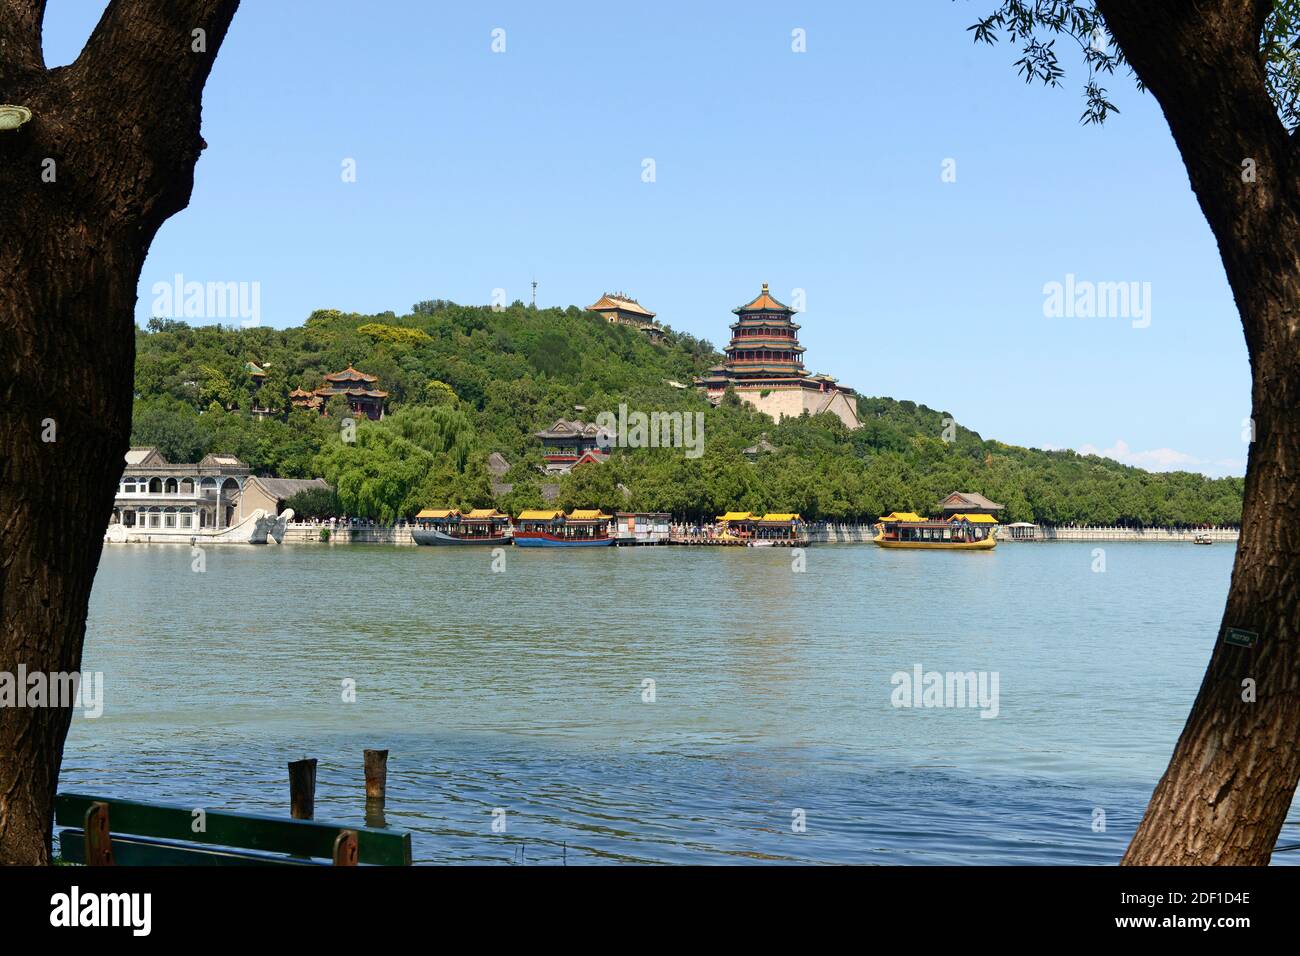 Blick über den Kunming-See am Sommerpalast in Peking, China, auf den Turm der buddhistischen Räucherstäbchen, Foxiangge, prominent. Stockfoto